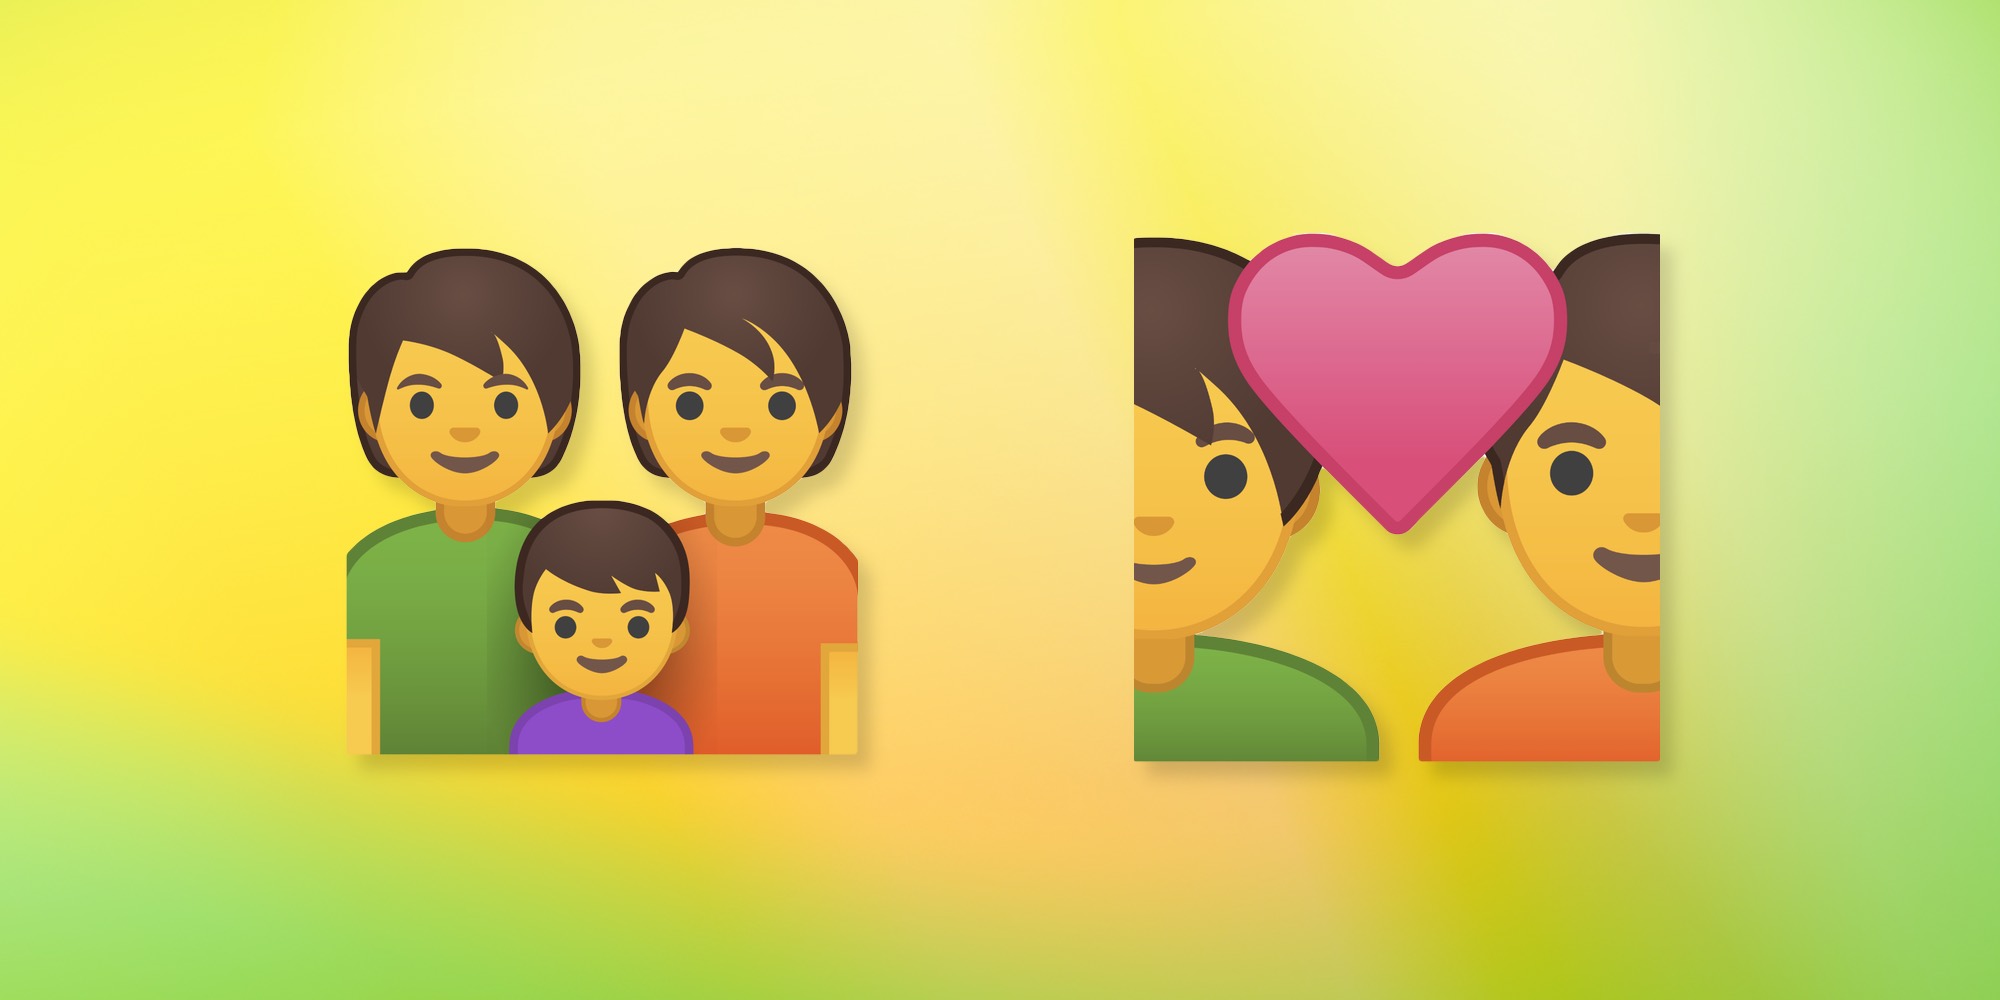 android p gender neutral emoji designs